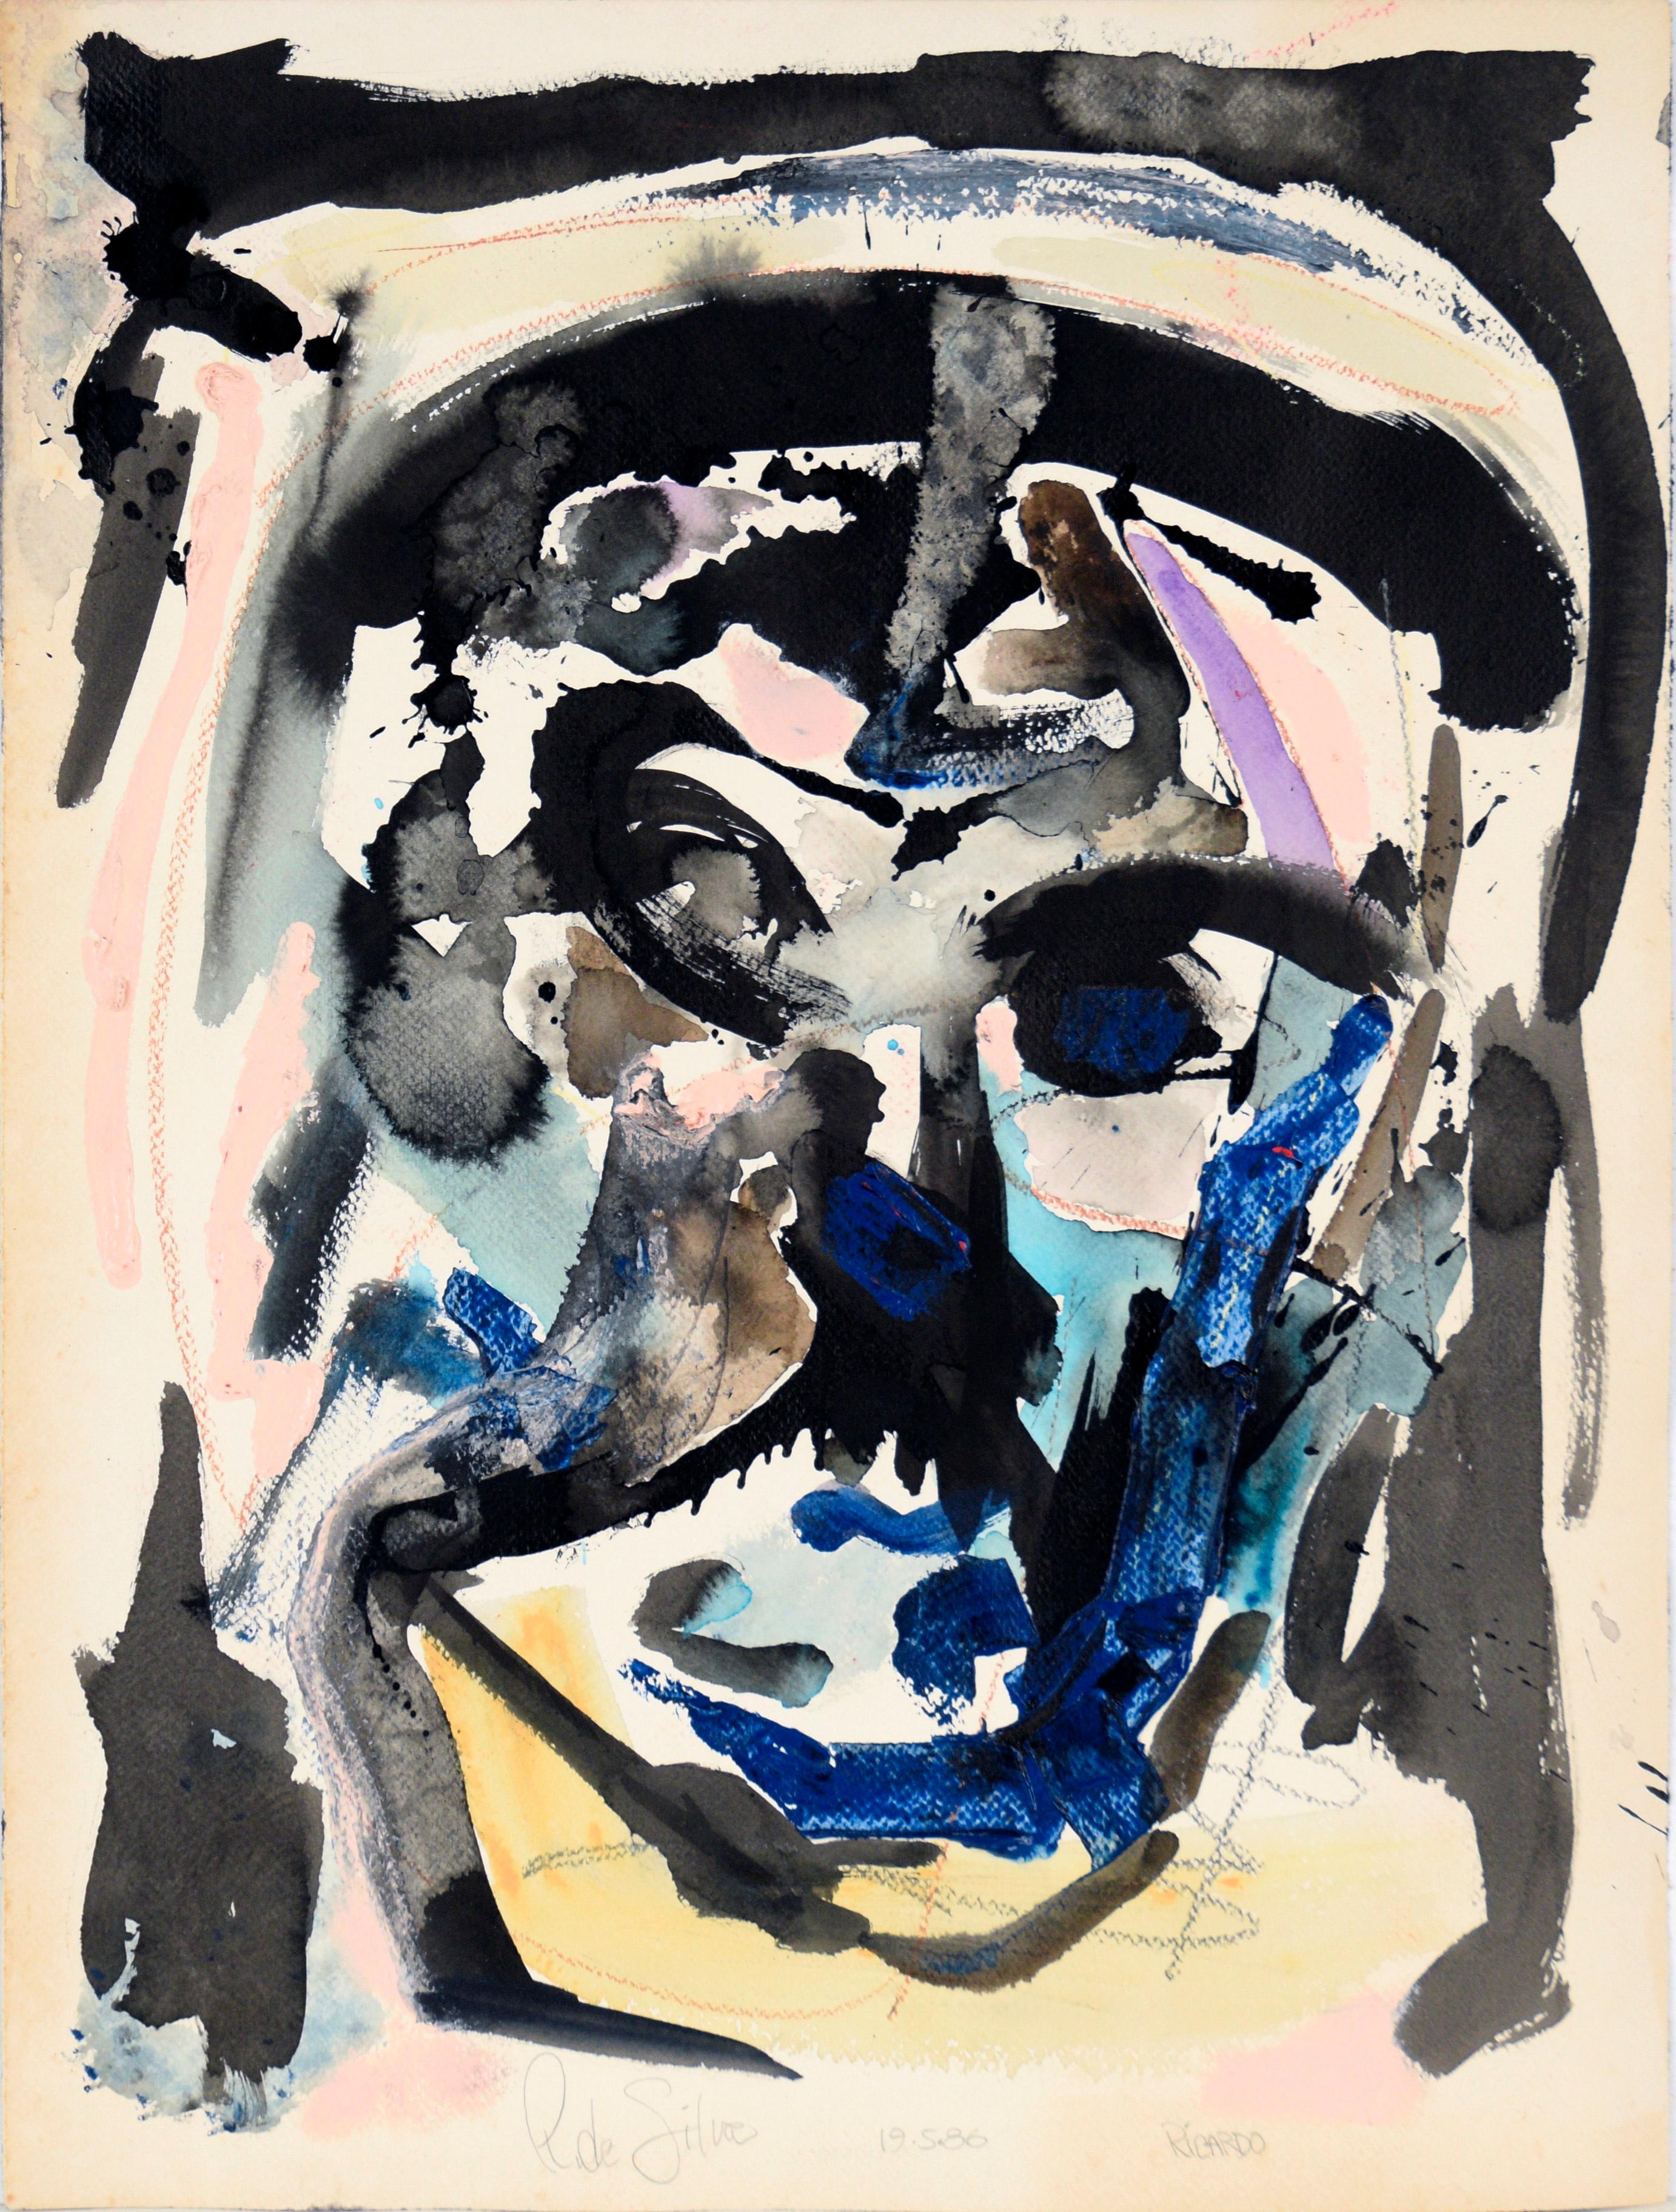 "Ricardo" - Abstraktes expressionistisches Self-Portrait in Acryl auf Papier